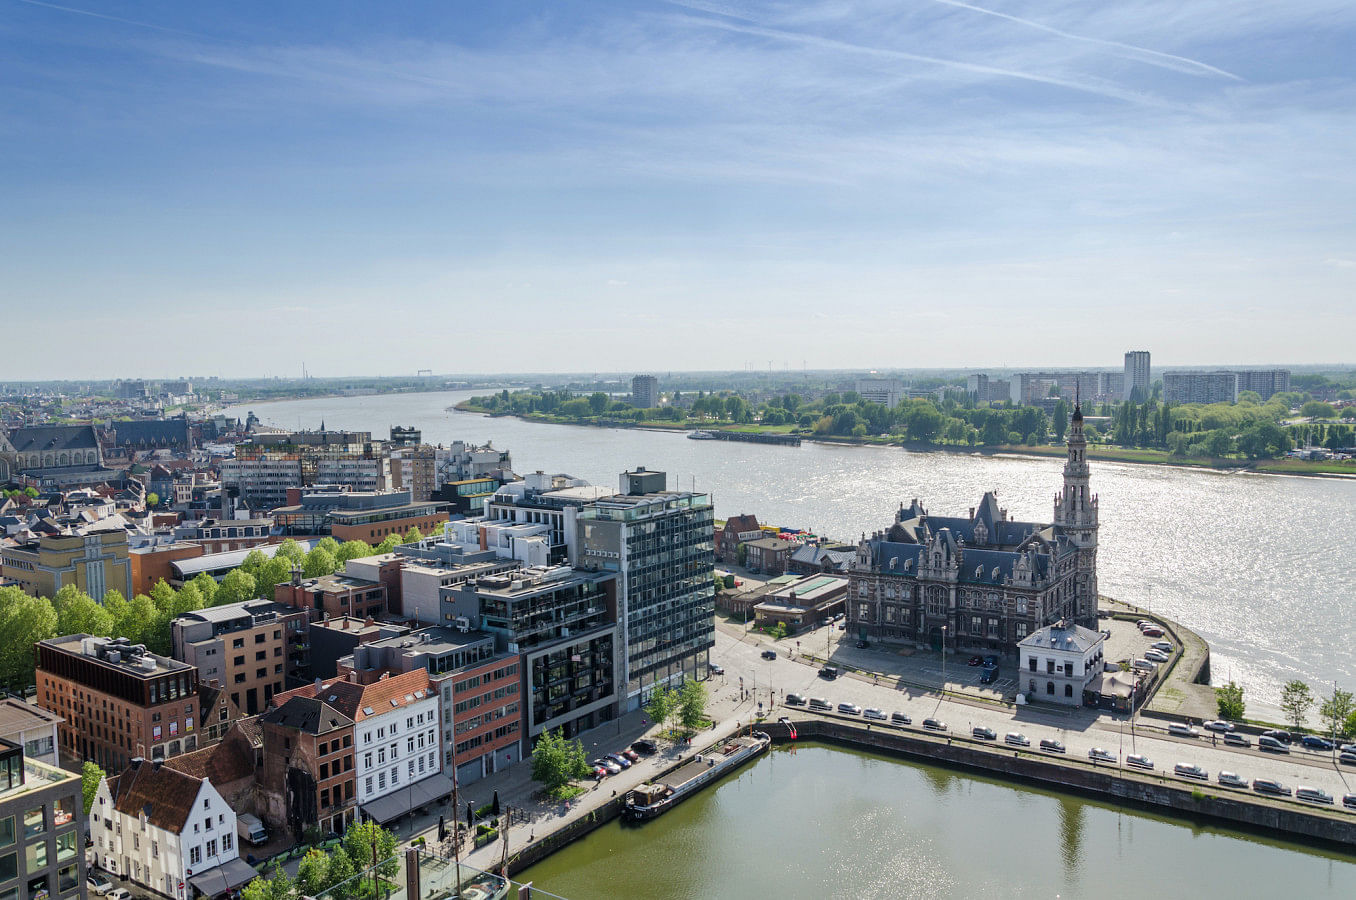 Lej en båd i Antwerp